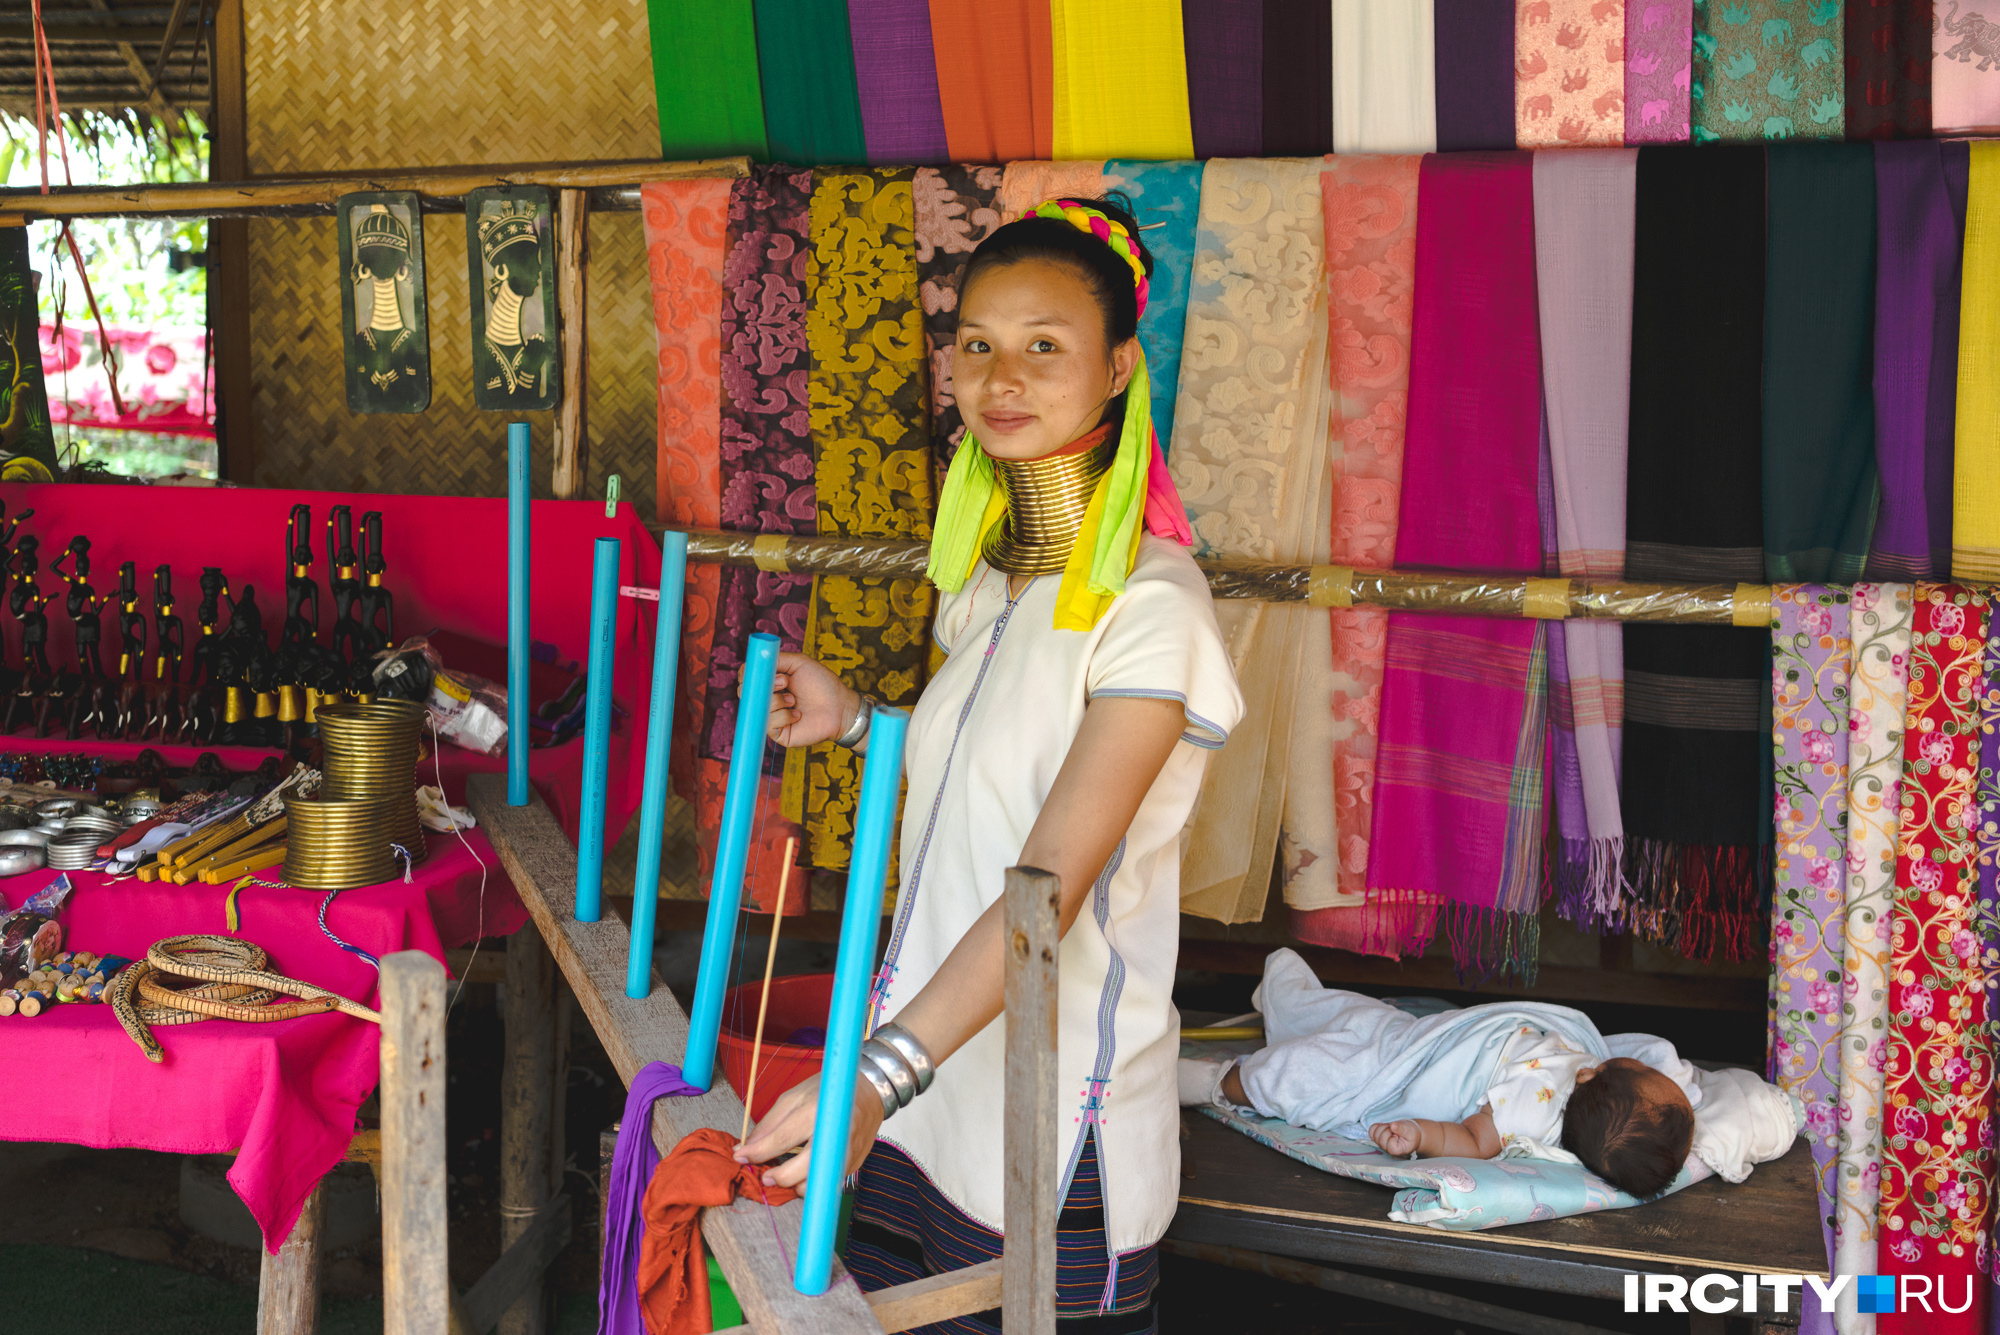 А это — жительница деревни длинношеих женщин племени Карен. Они вручную ткут шелковые платки, которые здесь же можно купить по очень приятной цене